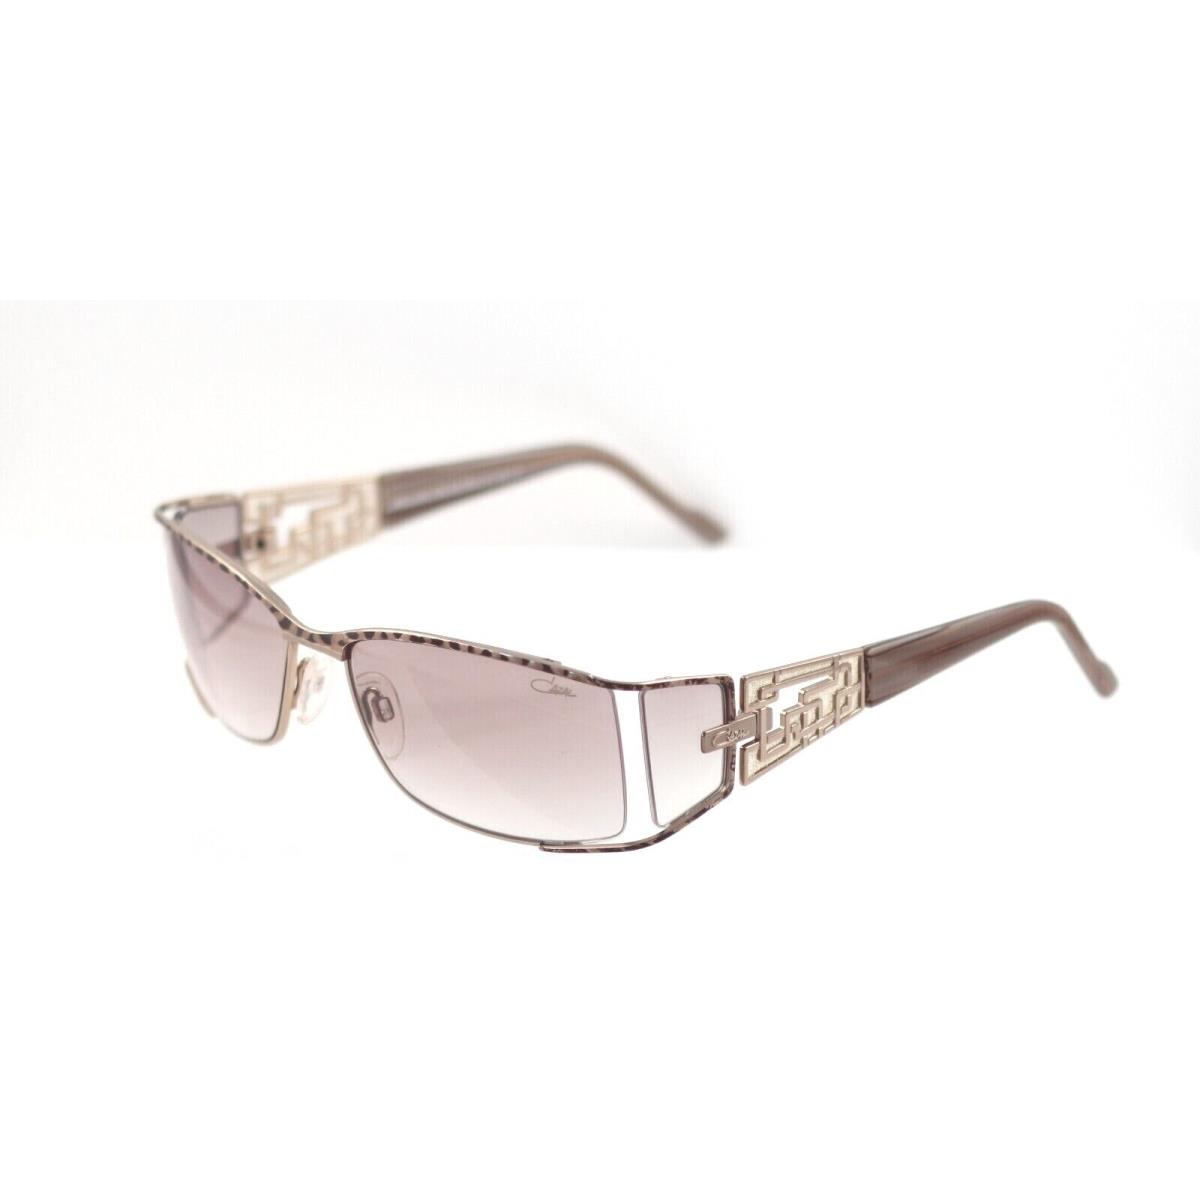 Cazal sunglasses  - Tortoise Gold , Tortoise Gold Frame, Brown Lens 0